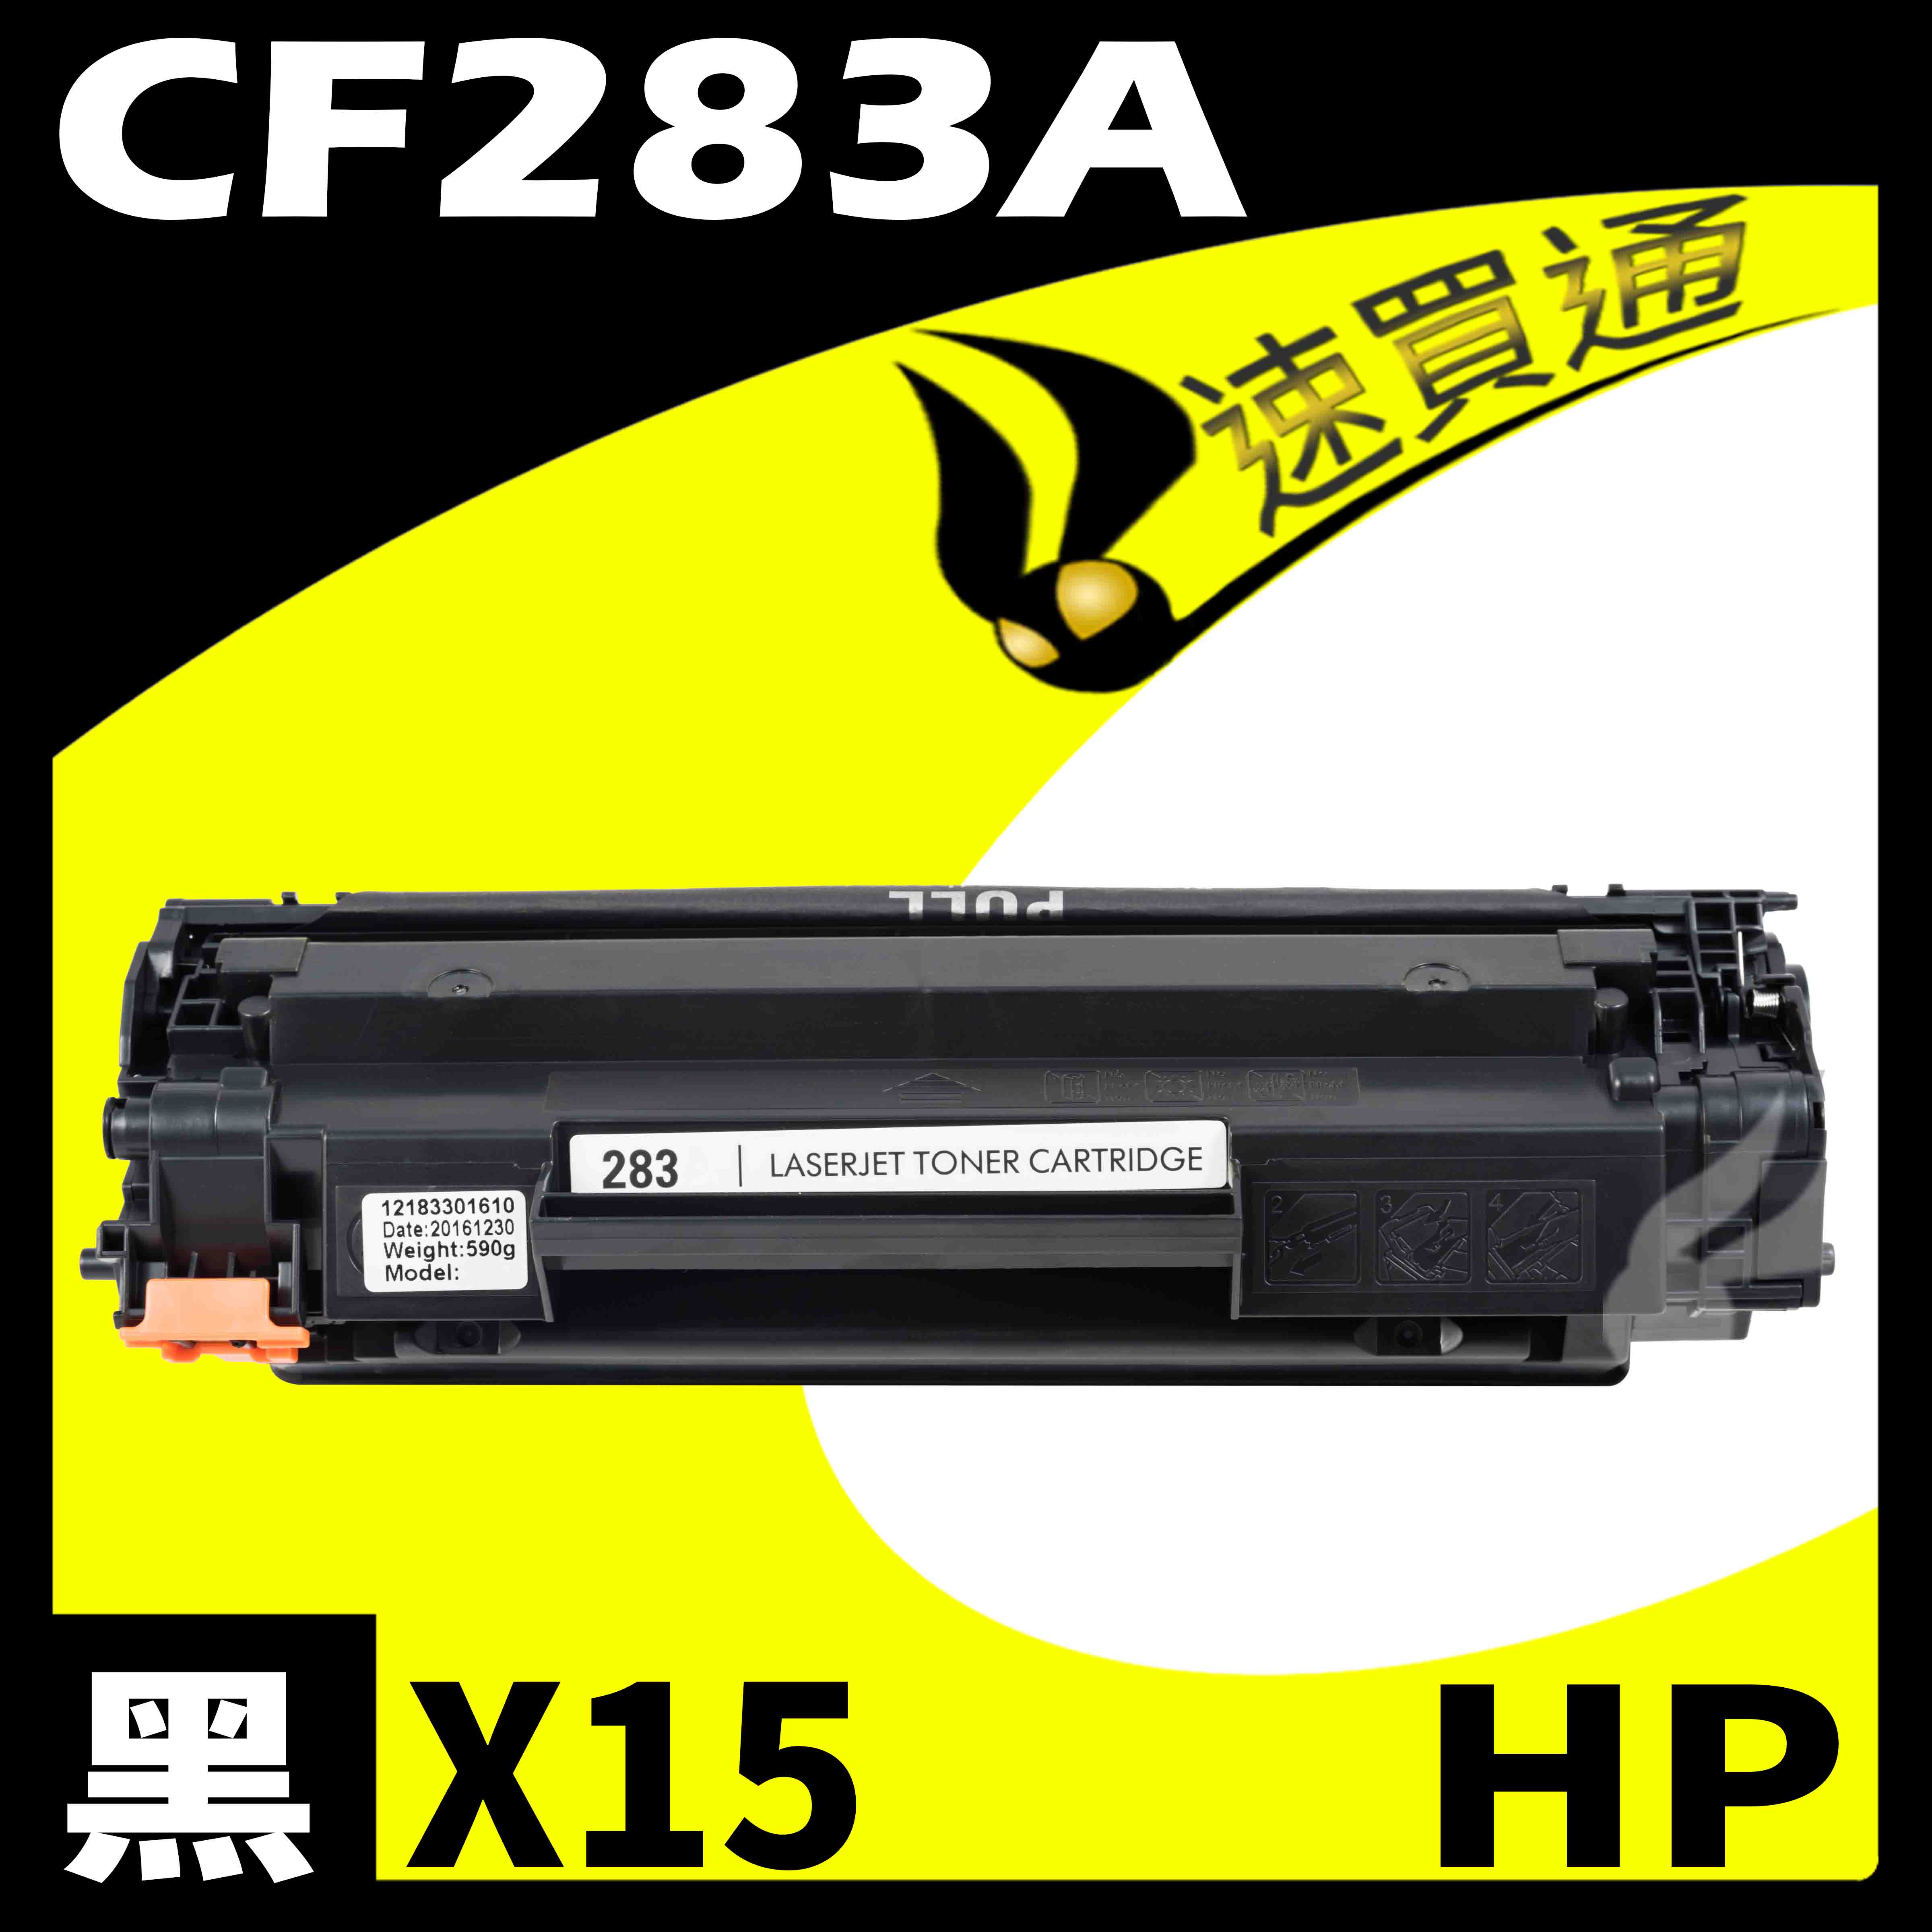 【速買通】超值15件組 HP CF283A 相容碳粉匣